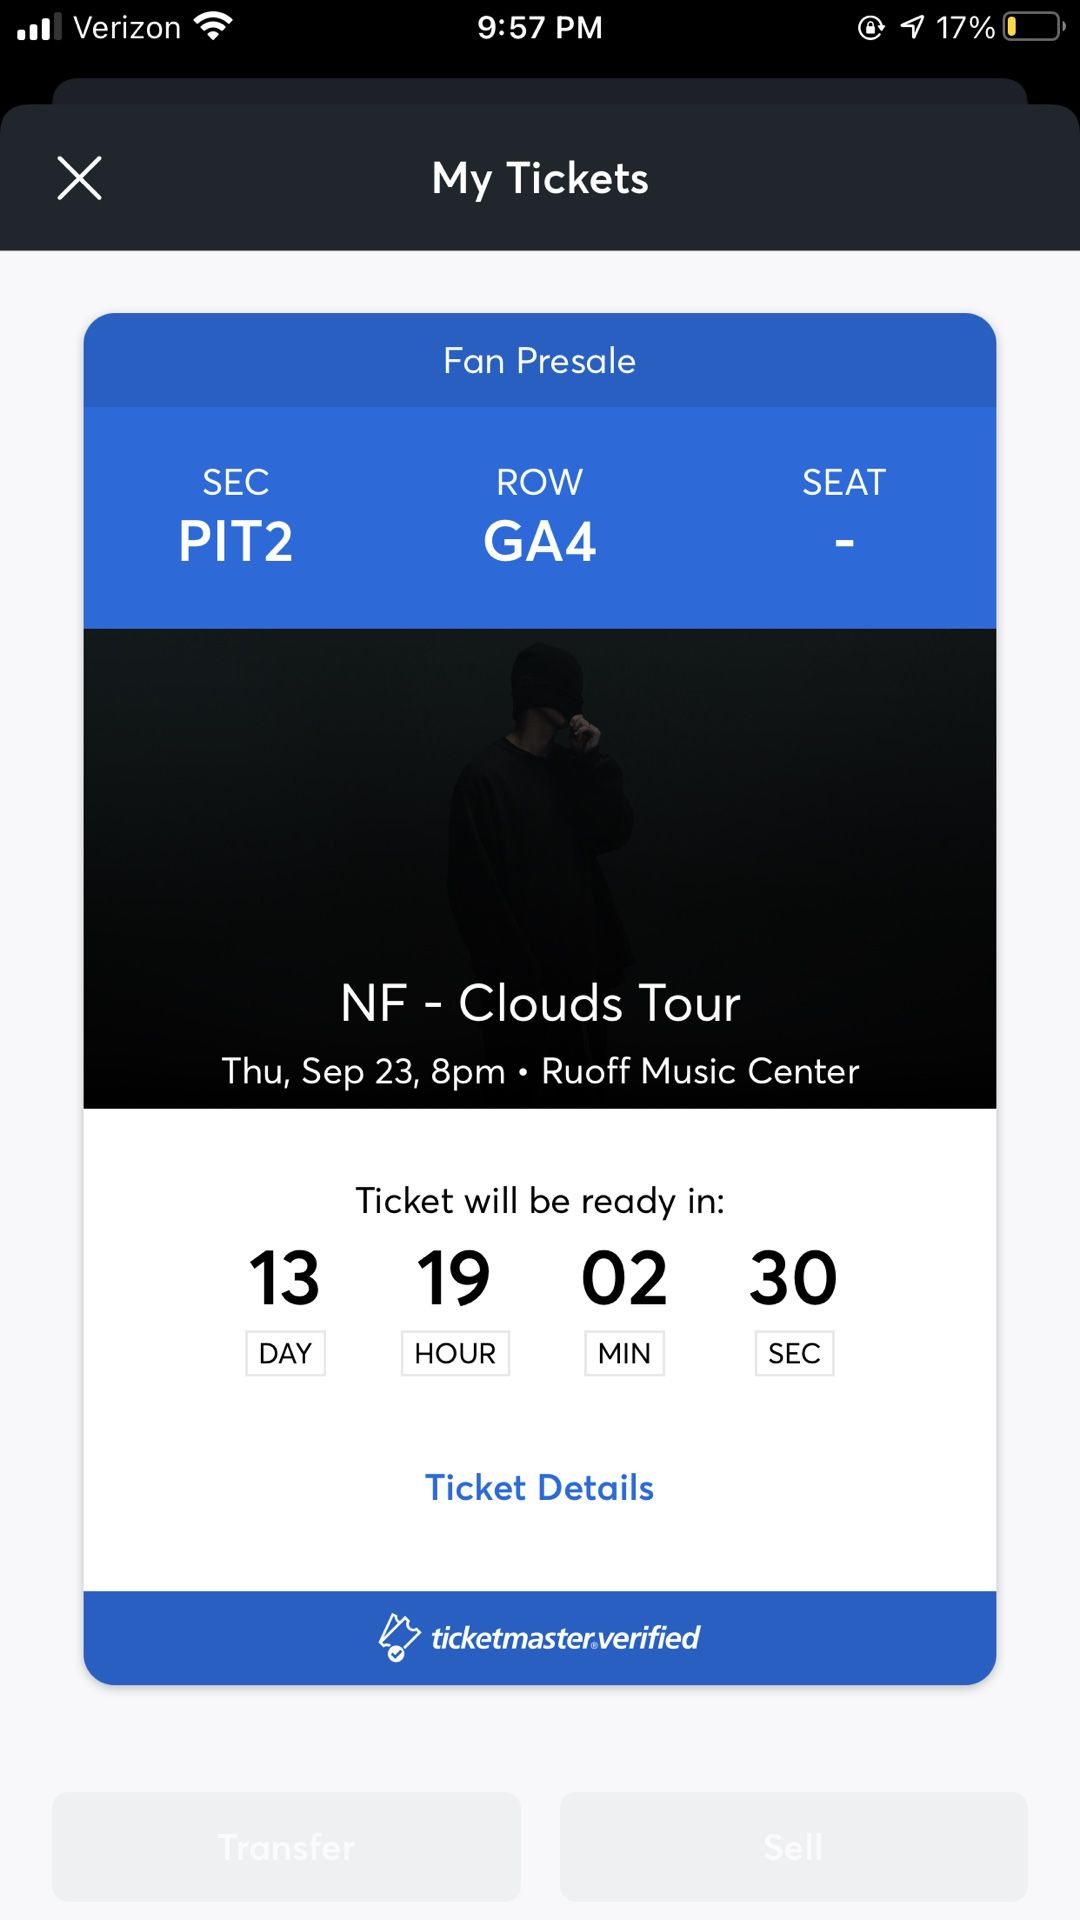 NF Concert ticket